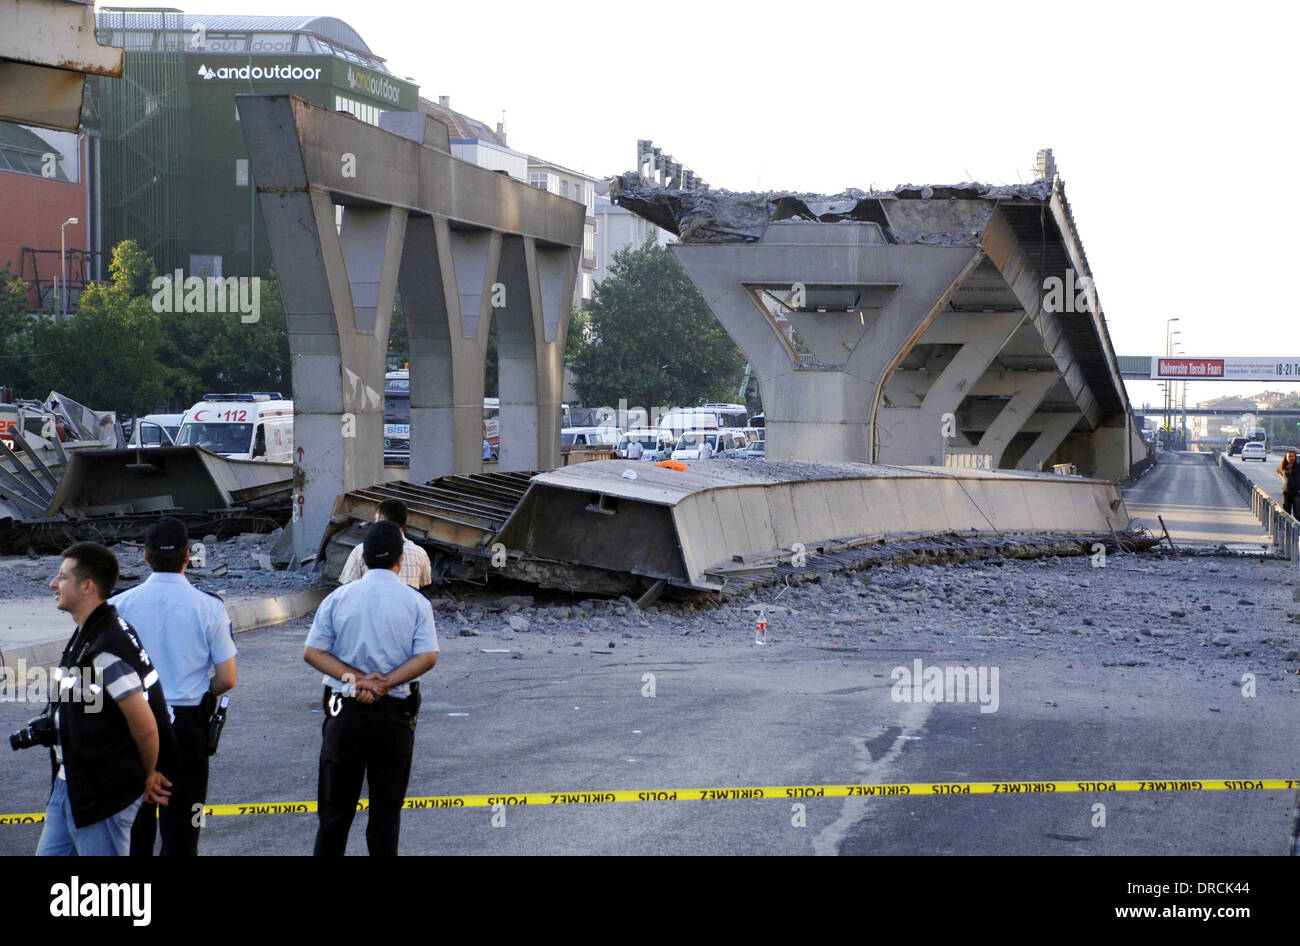 Metrobus puente se derrumba un puente de cemento siding colapsó durante el trabajo de reparación en Estambul en línea Metrobús Avcilar-Beylikduzu el 15 de julio, matando a uno de ellos e hiriendo a dos trabajadores. El puente de conexión estaba siendo construida a través de la E-5 autopista cuando un gran Foto de stock